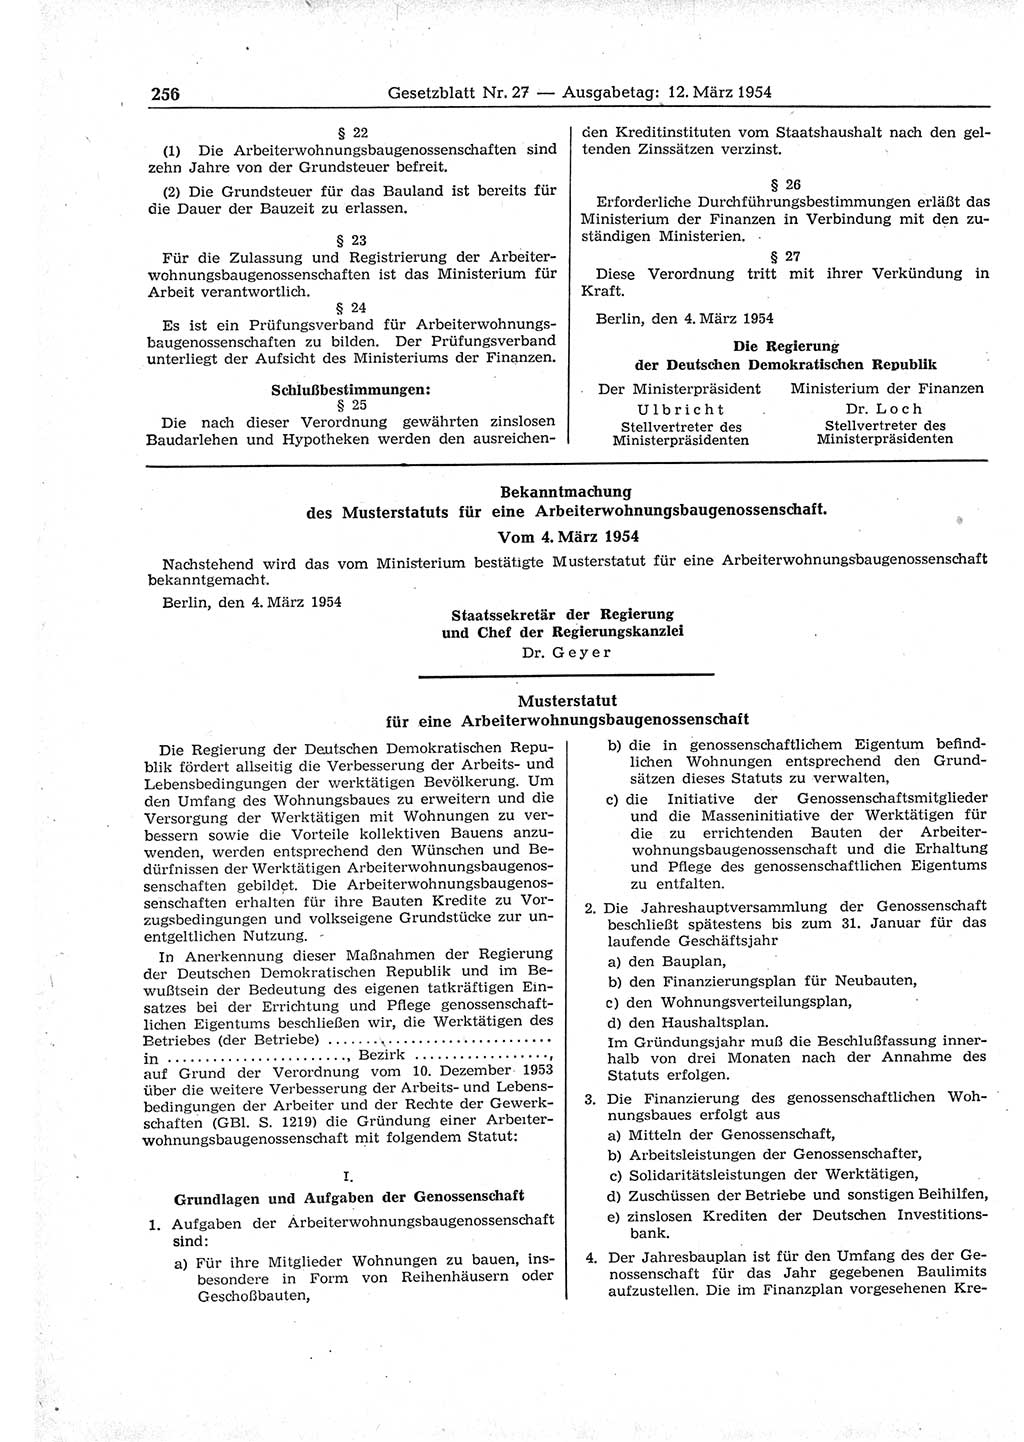 Gesetzblatt (GBl.) der Deutschen Demokratischen Republik (DDR) 1954, Seite 256 (GBl. DDR 1954, S. 256)